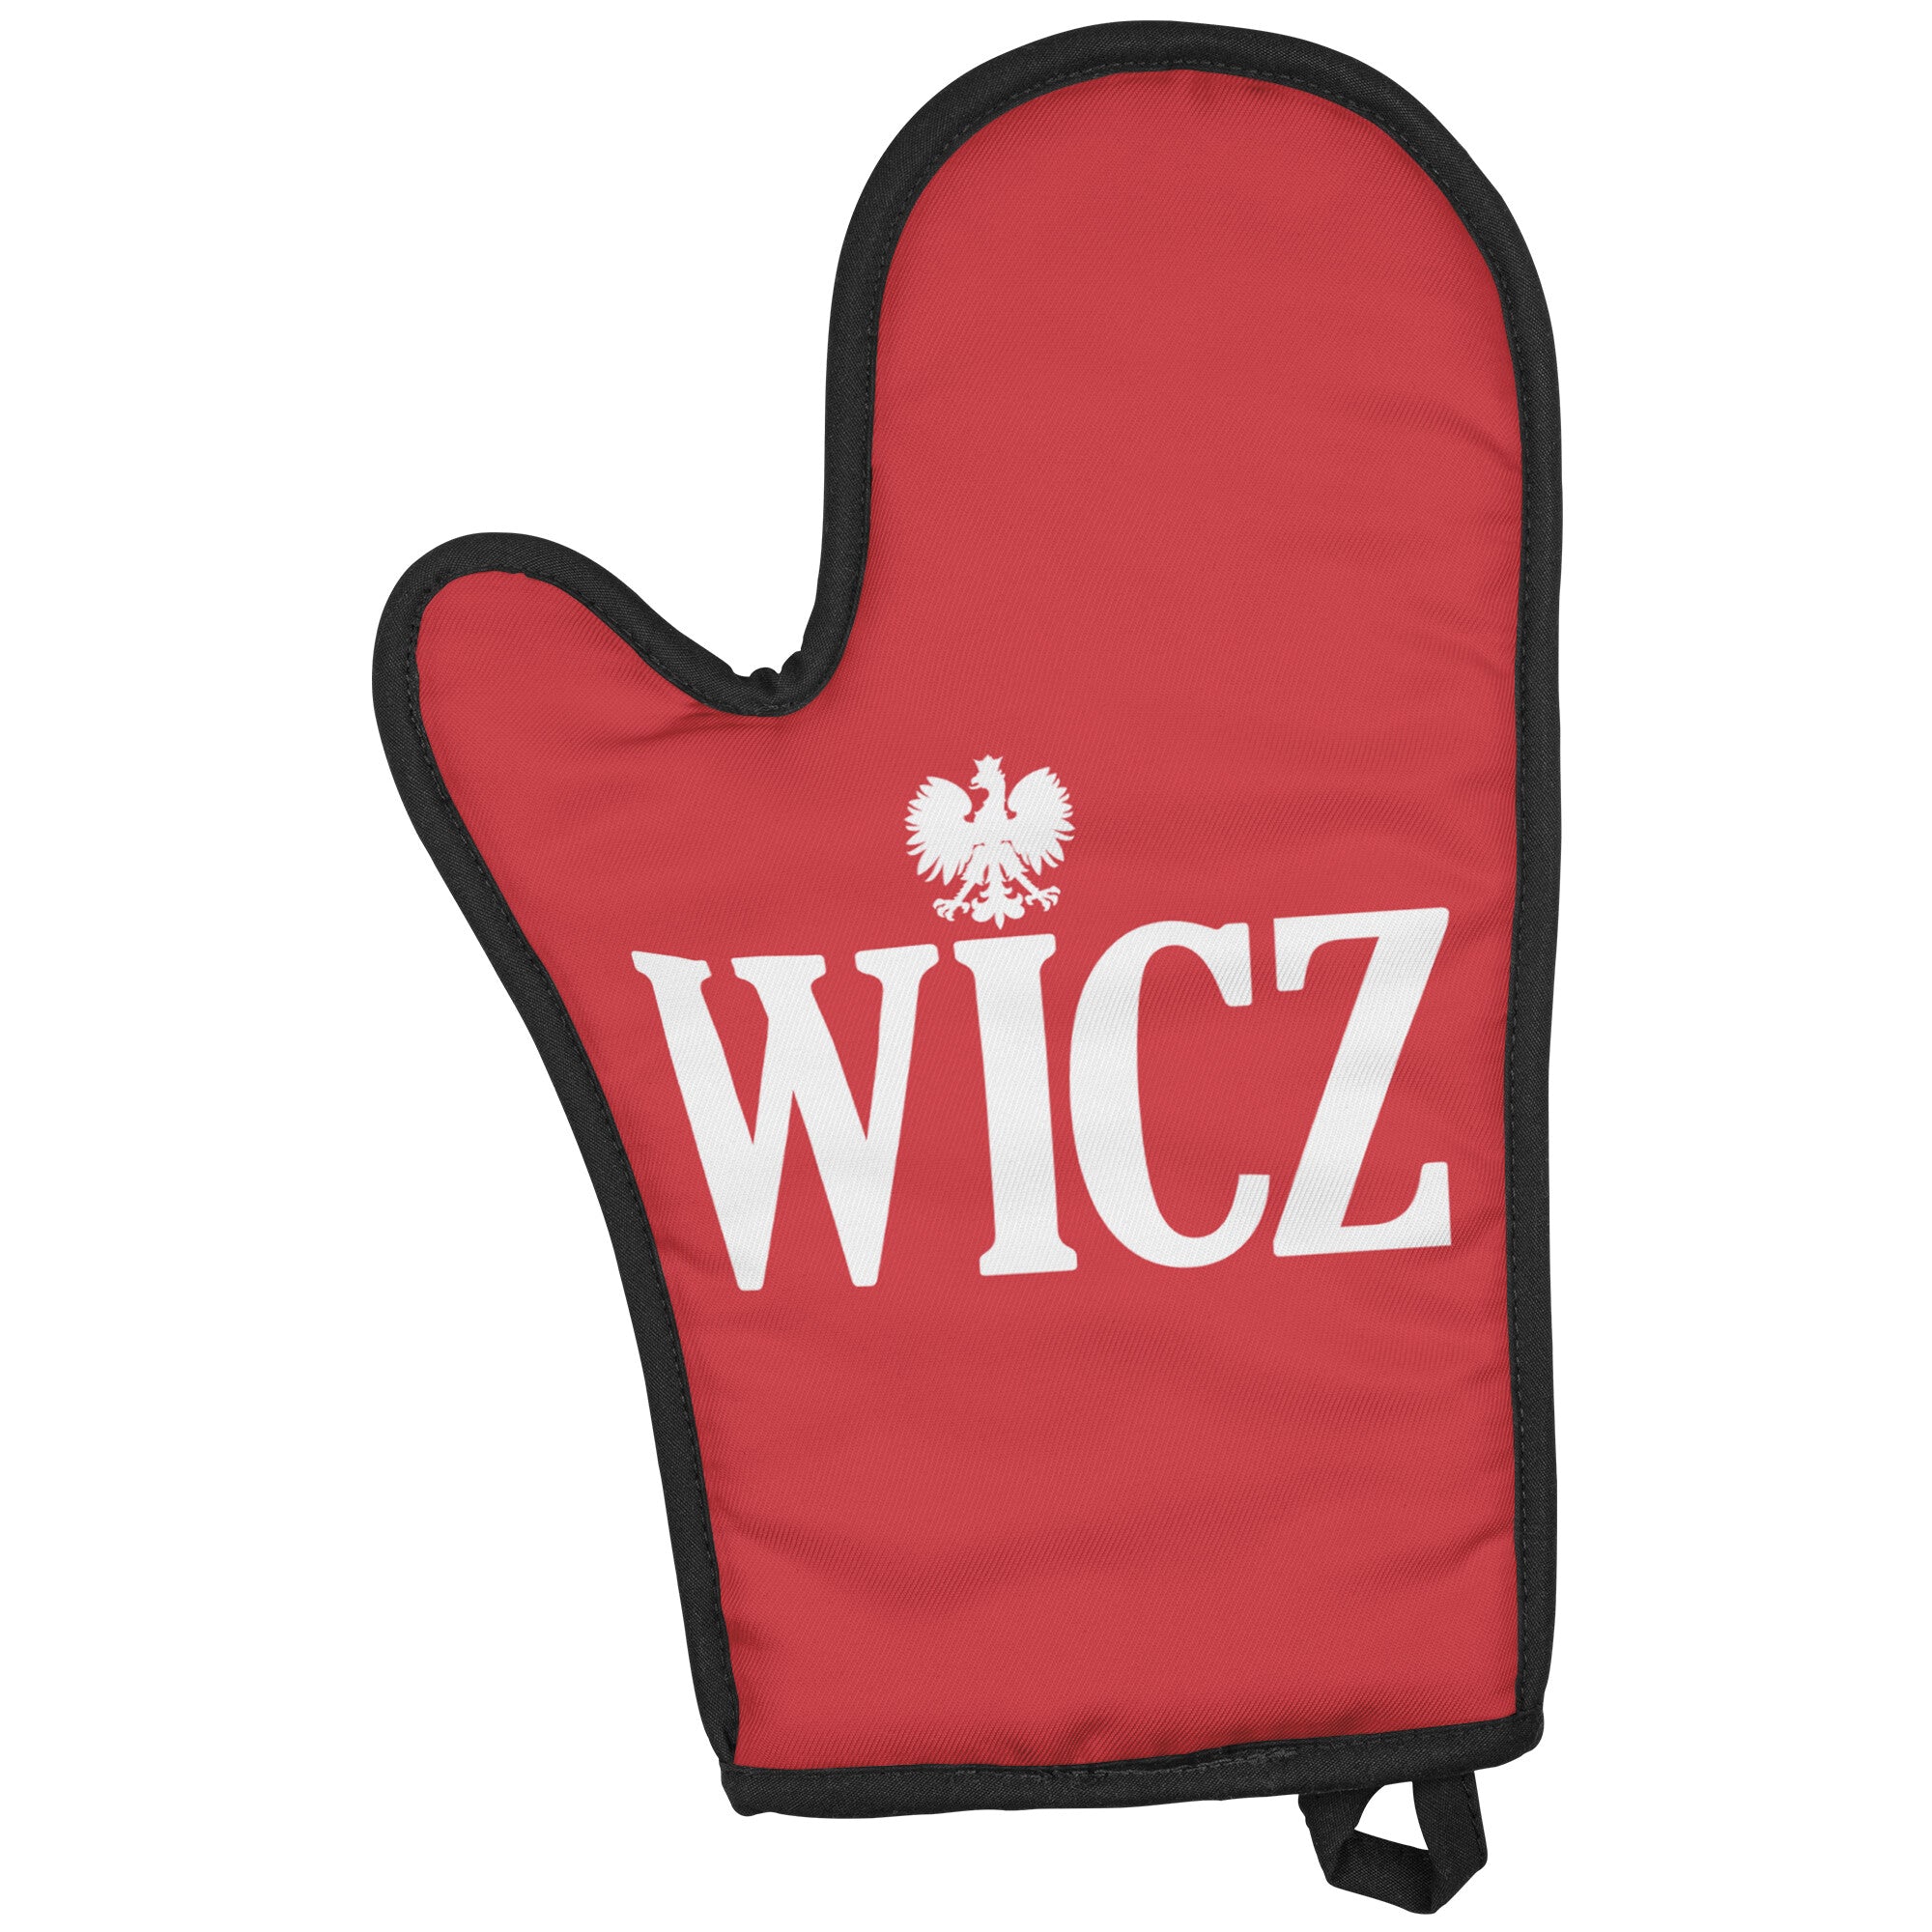 WICZ Polish Last name Ending Oven Mitt Kitchenware teelaunch   